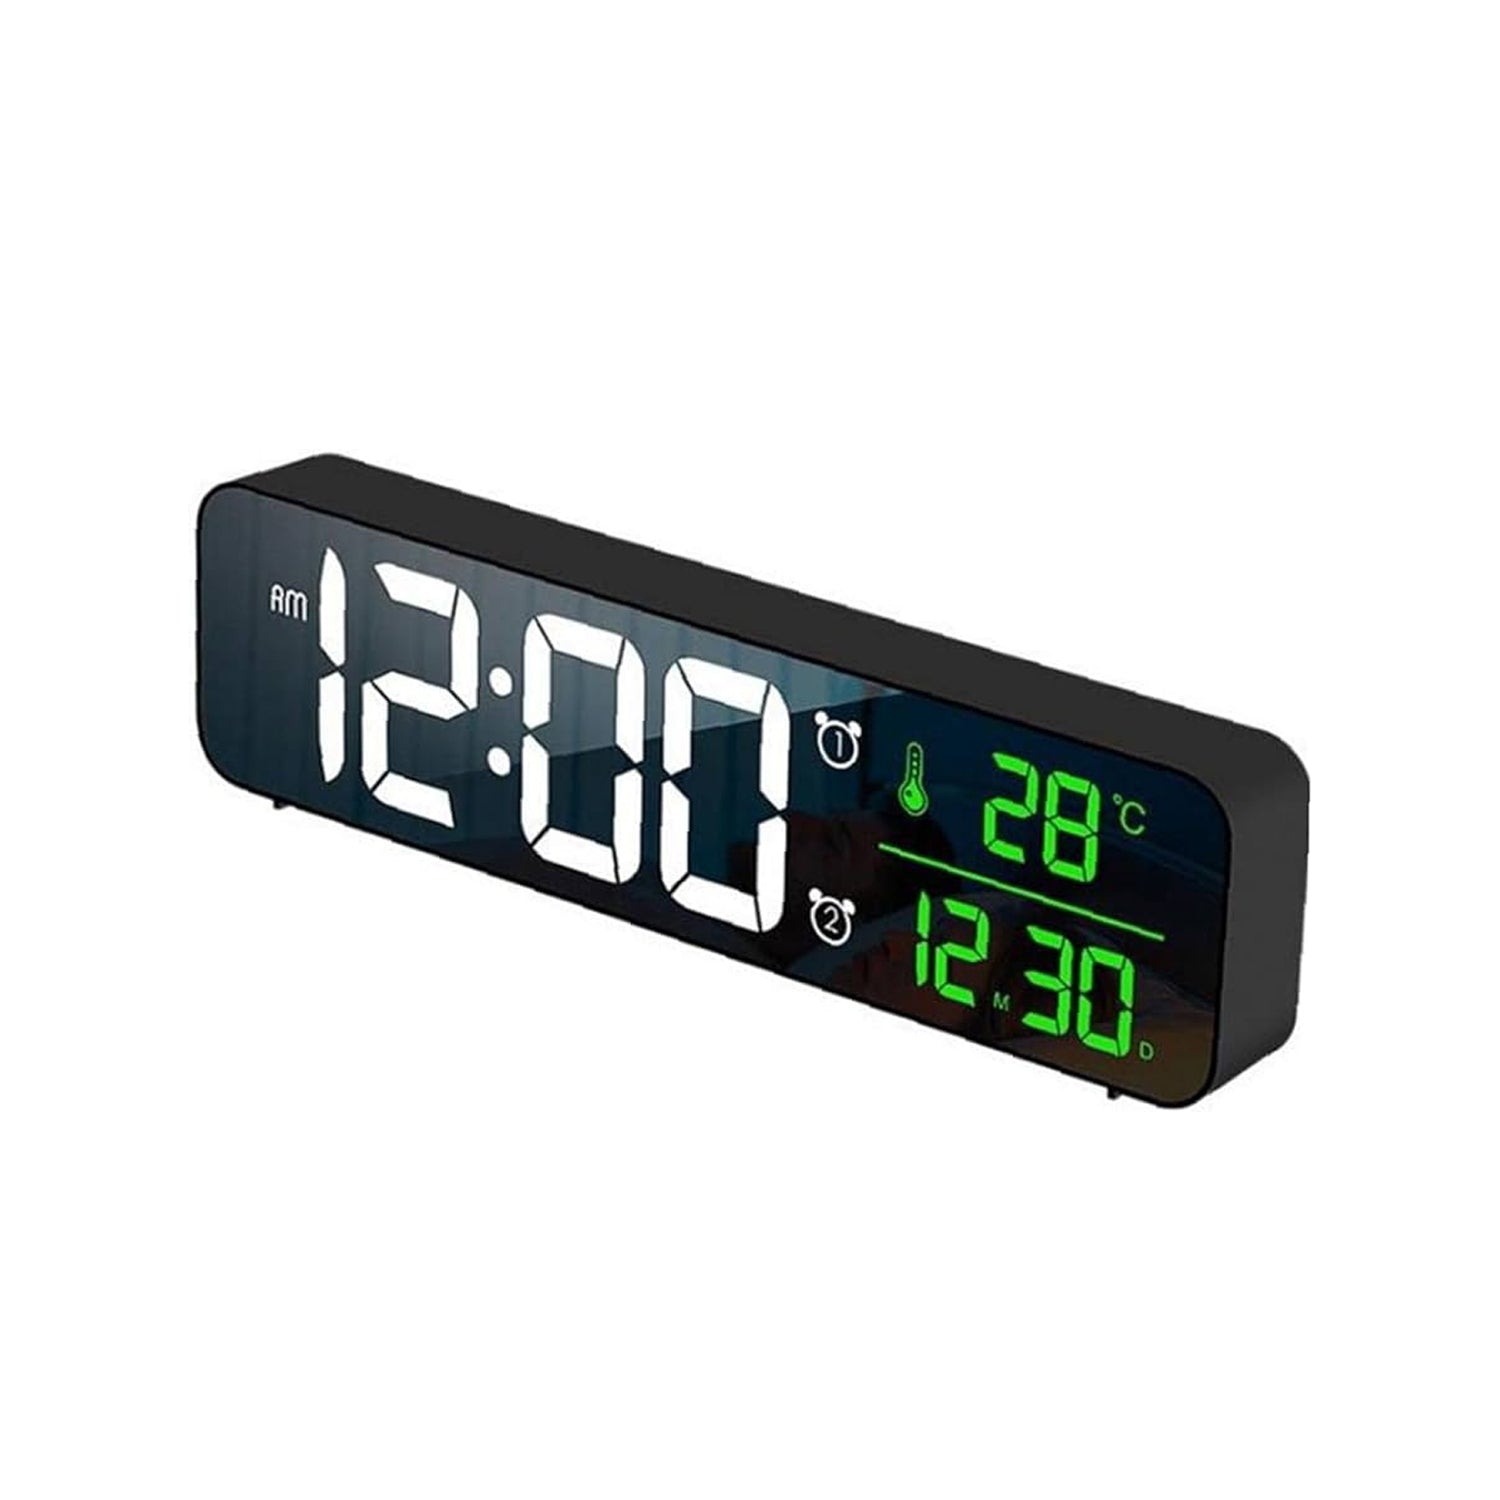 Reloj digital despertador alarma de escritorio luz LED fecha temperatu